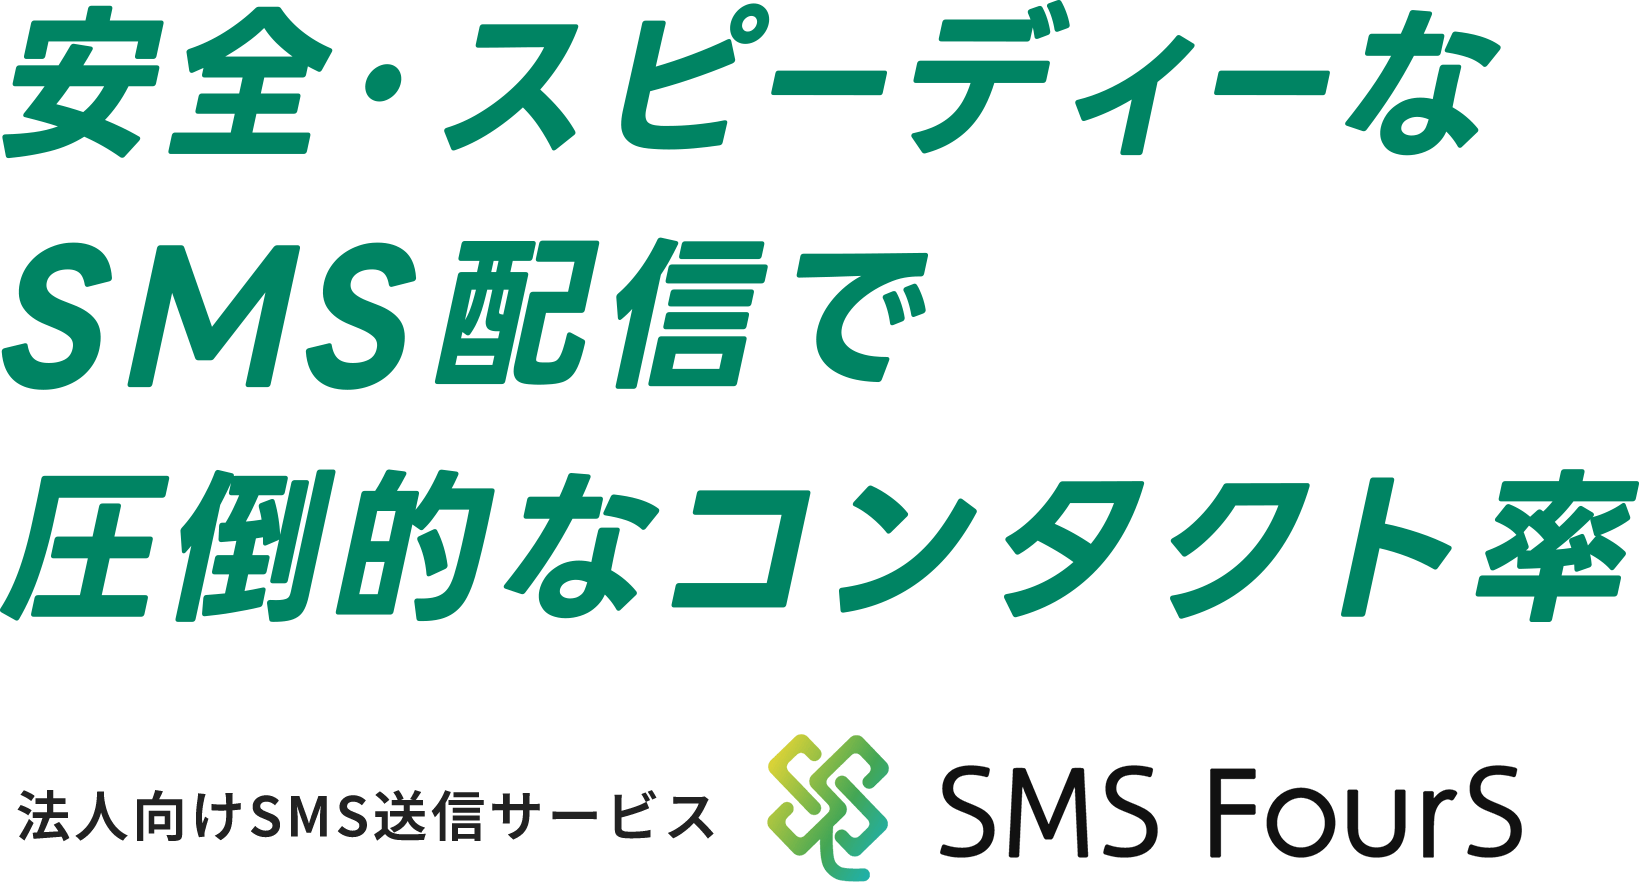 安全・スピーディーなSMS配信で圧倒的なコンタクト率。法人向けSMS送信サービス「SMS FourS」